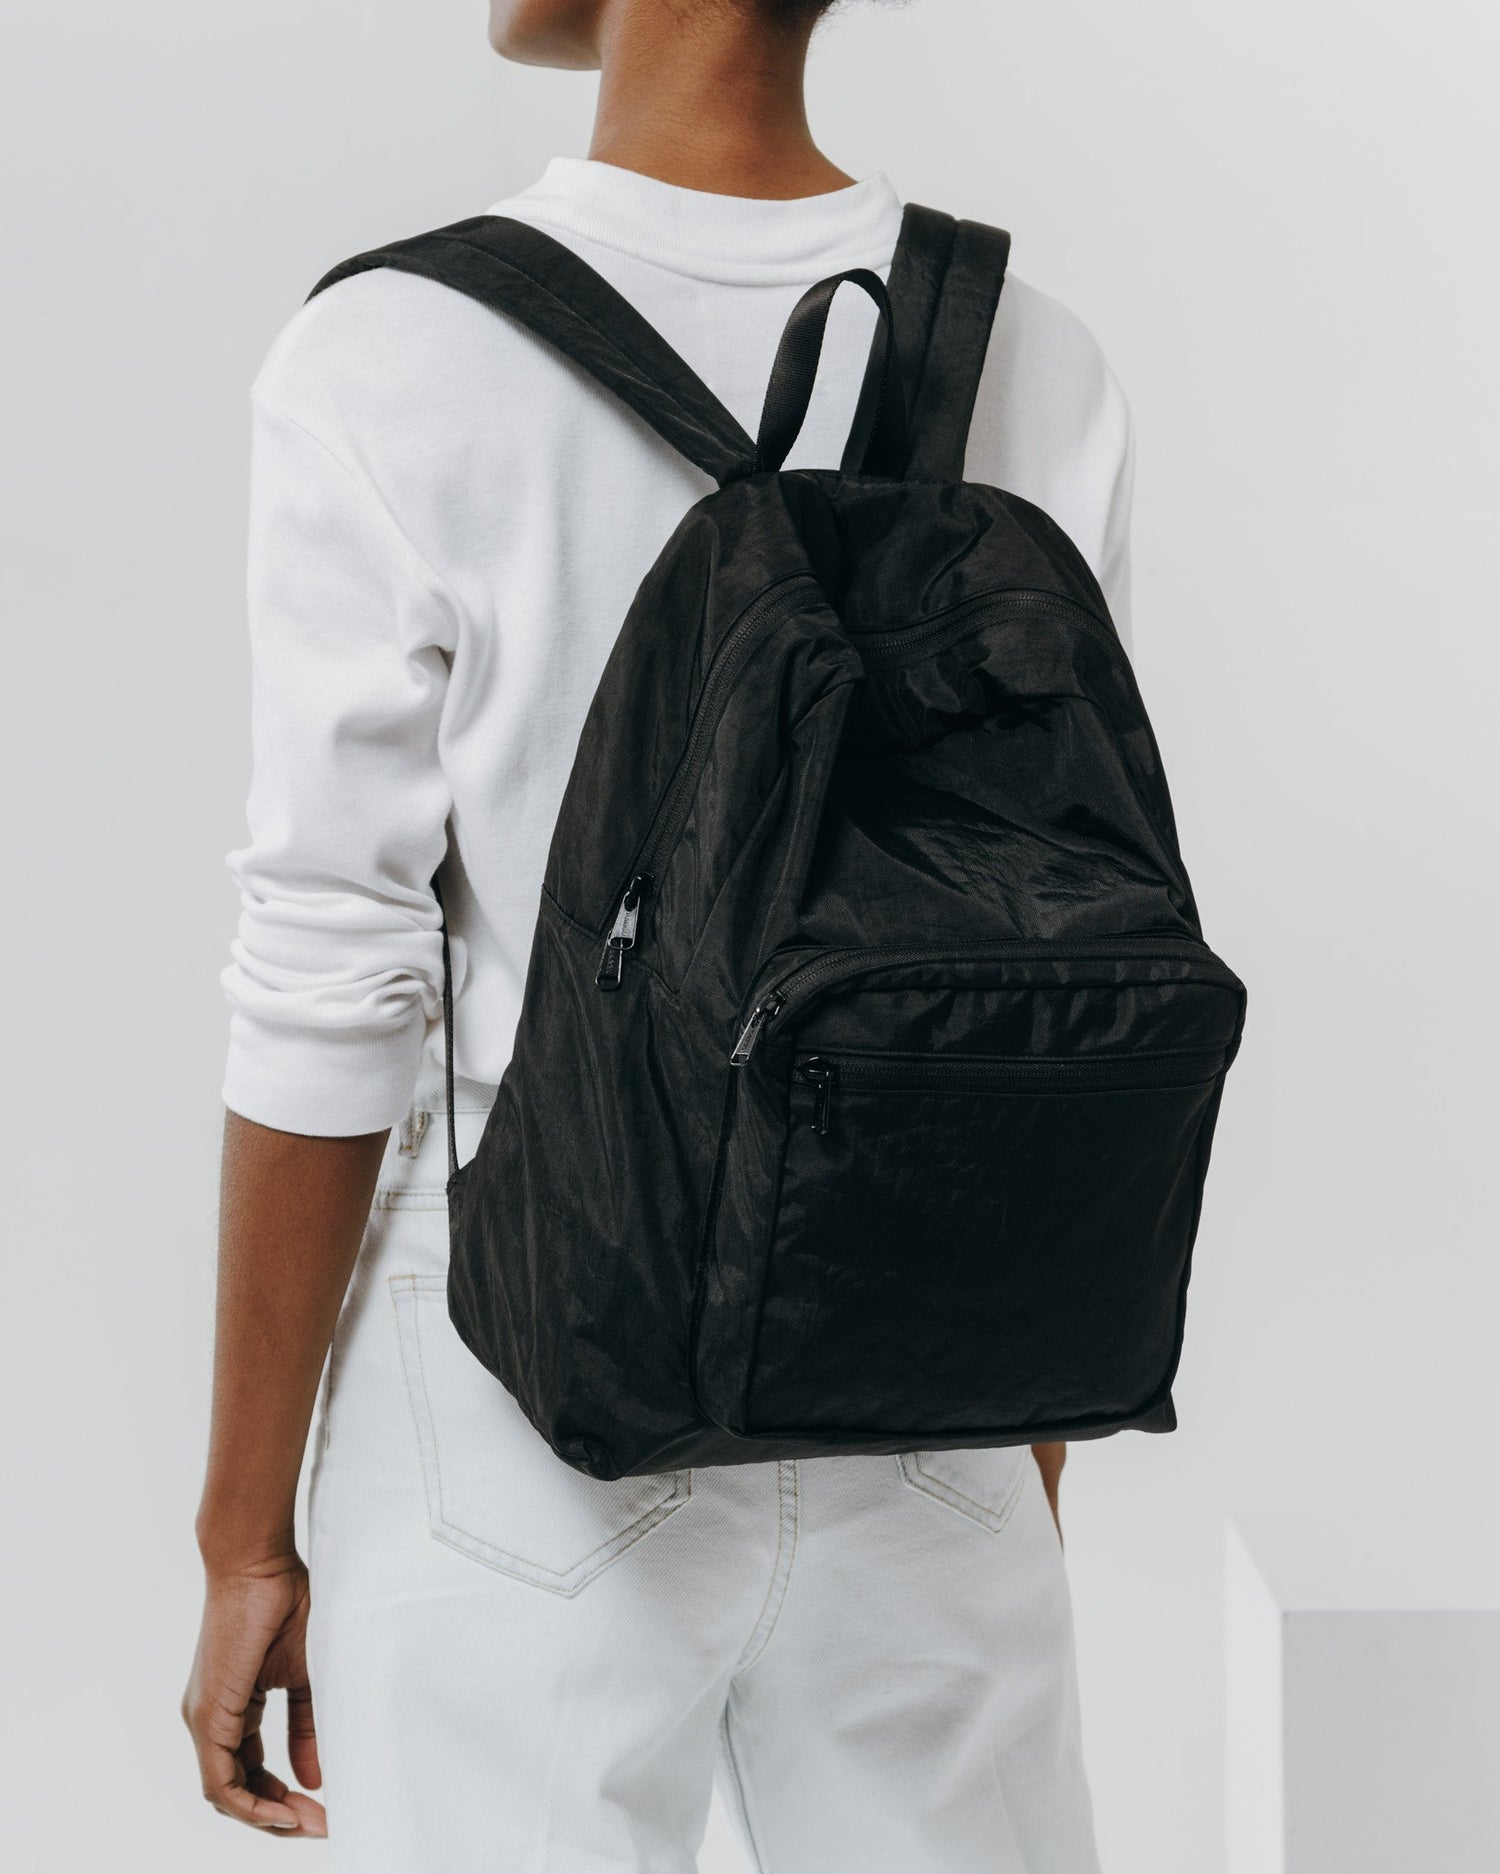 Baggu School Backpack - Black